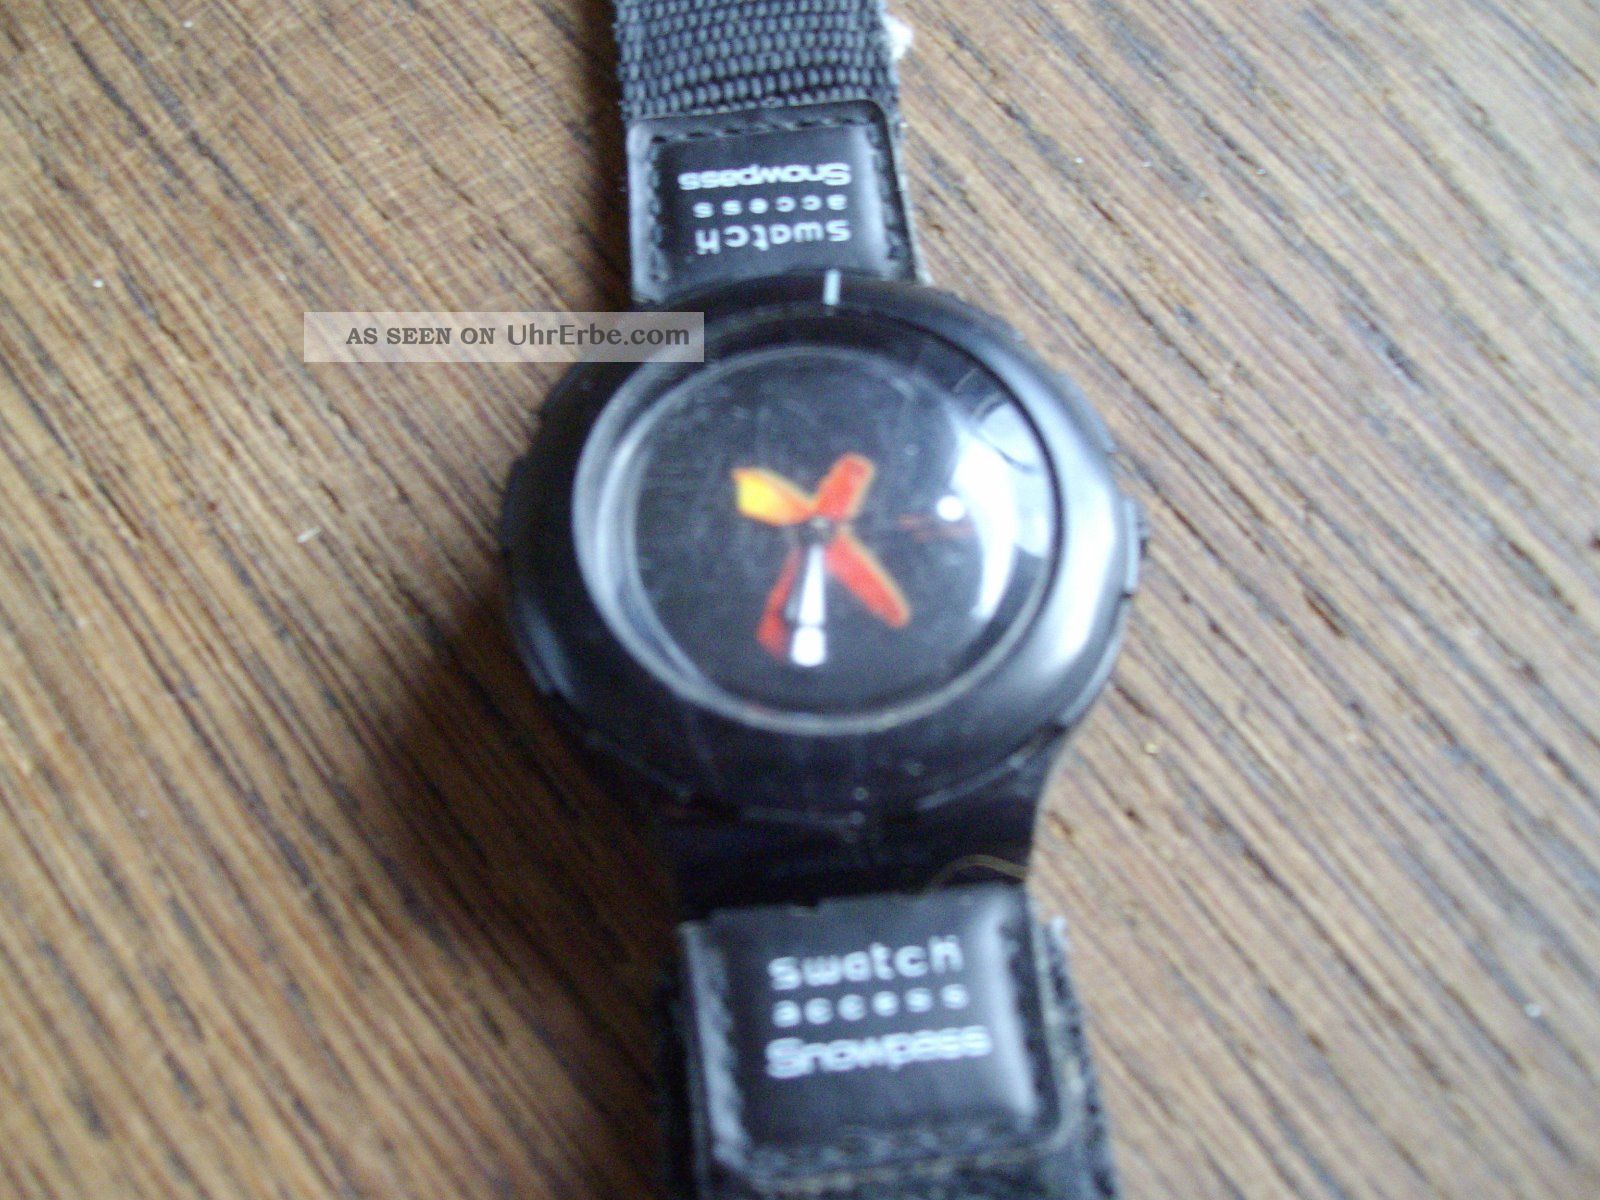 Swatch Armband Uhr Access Snowpass 5742 S 9001 Schwarz Gebaucht Retro Armbanduhren Bild